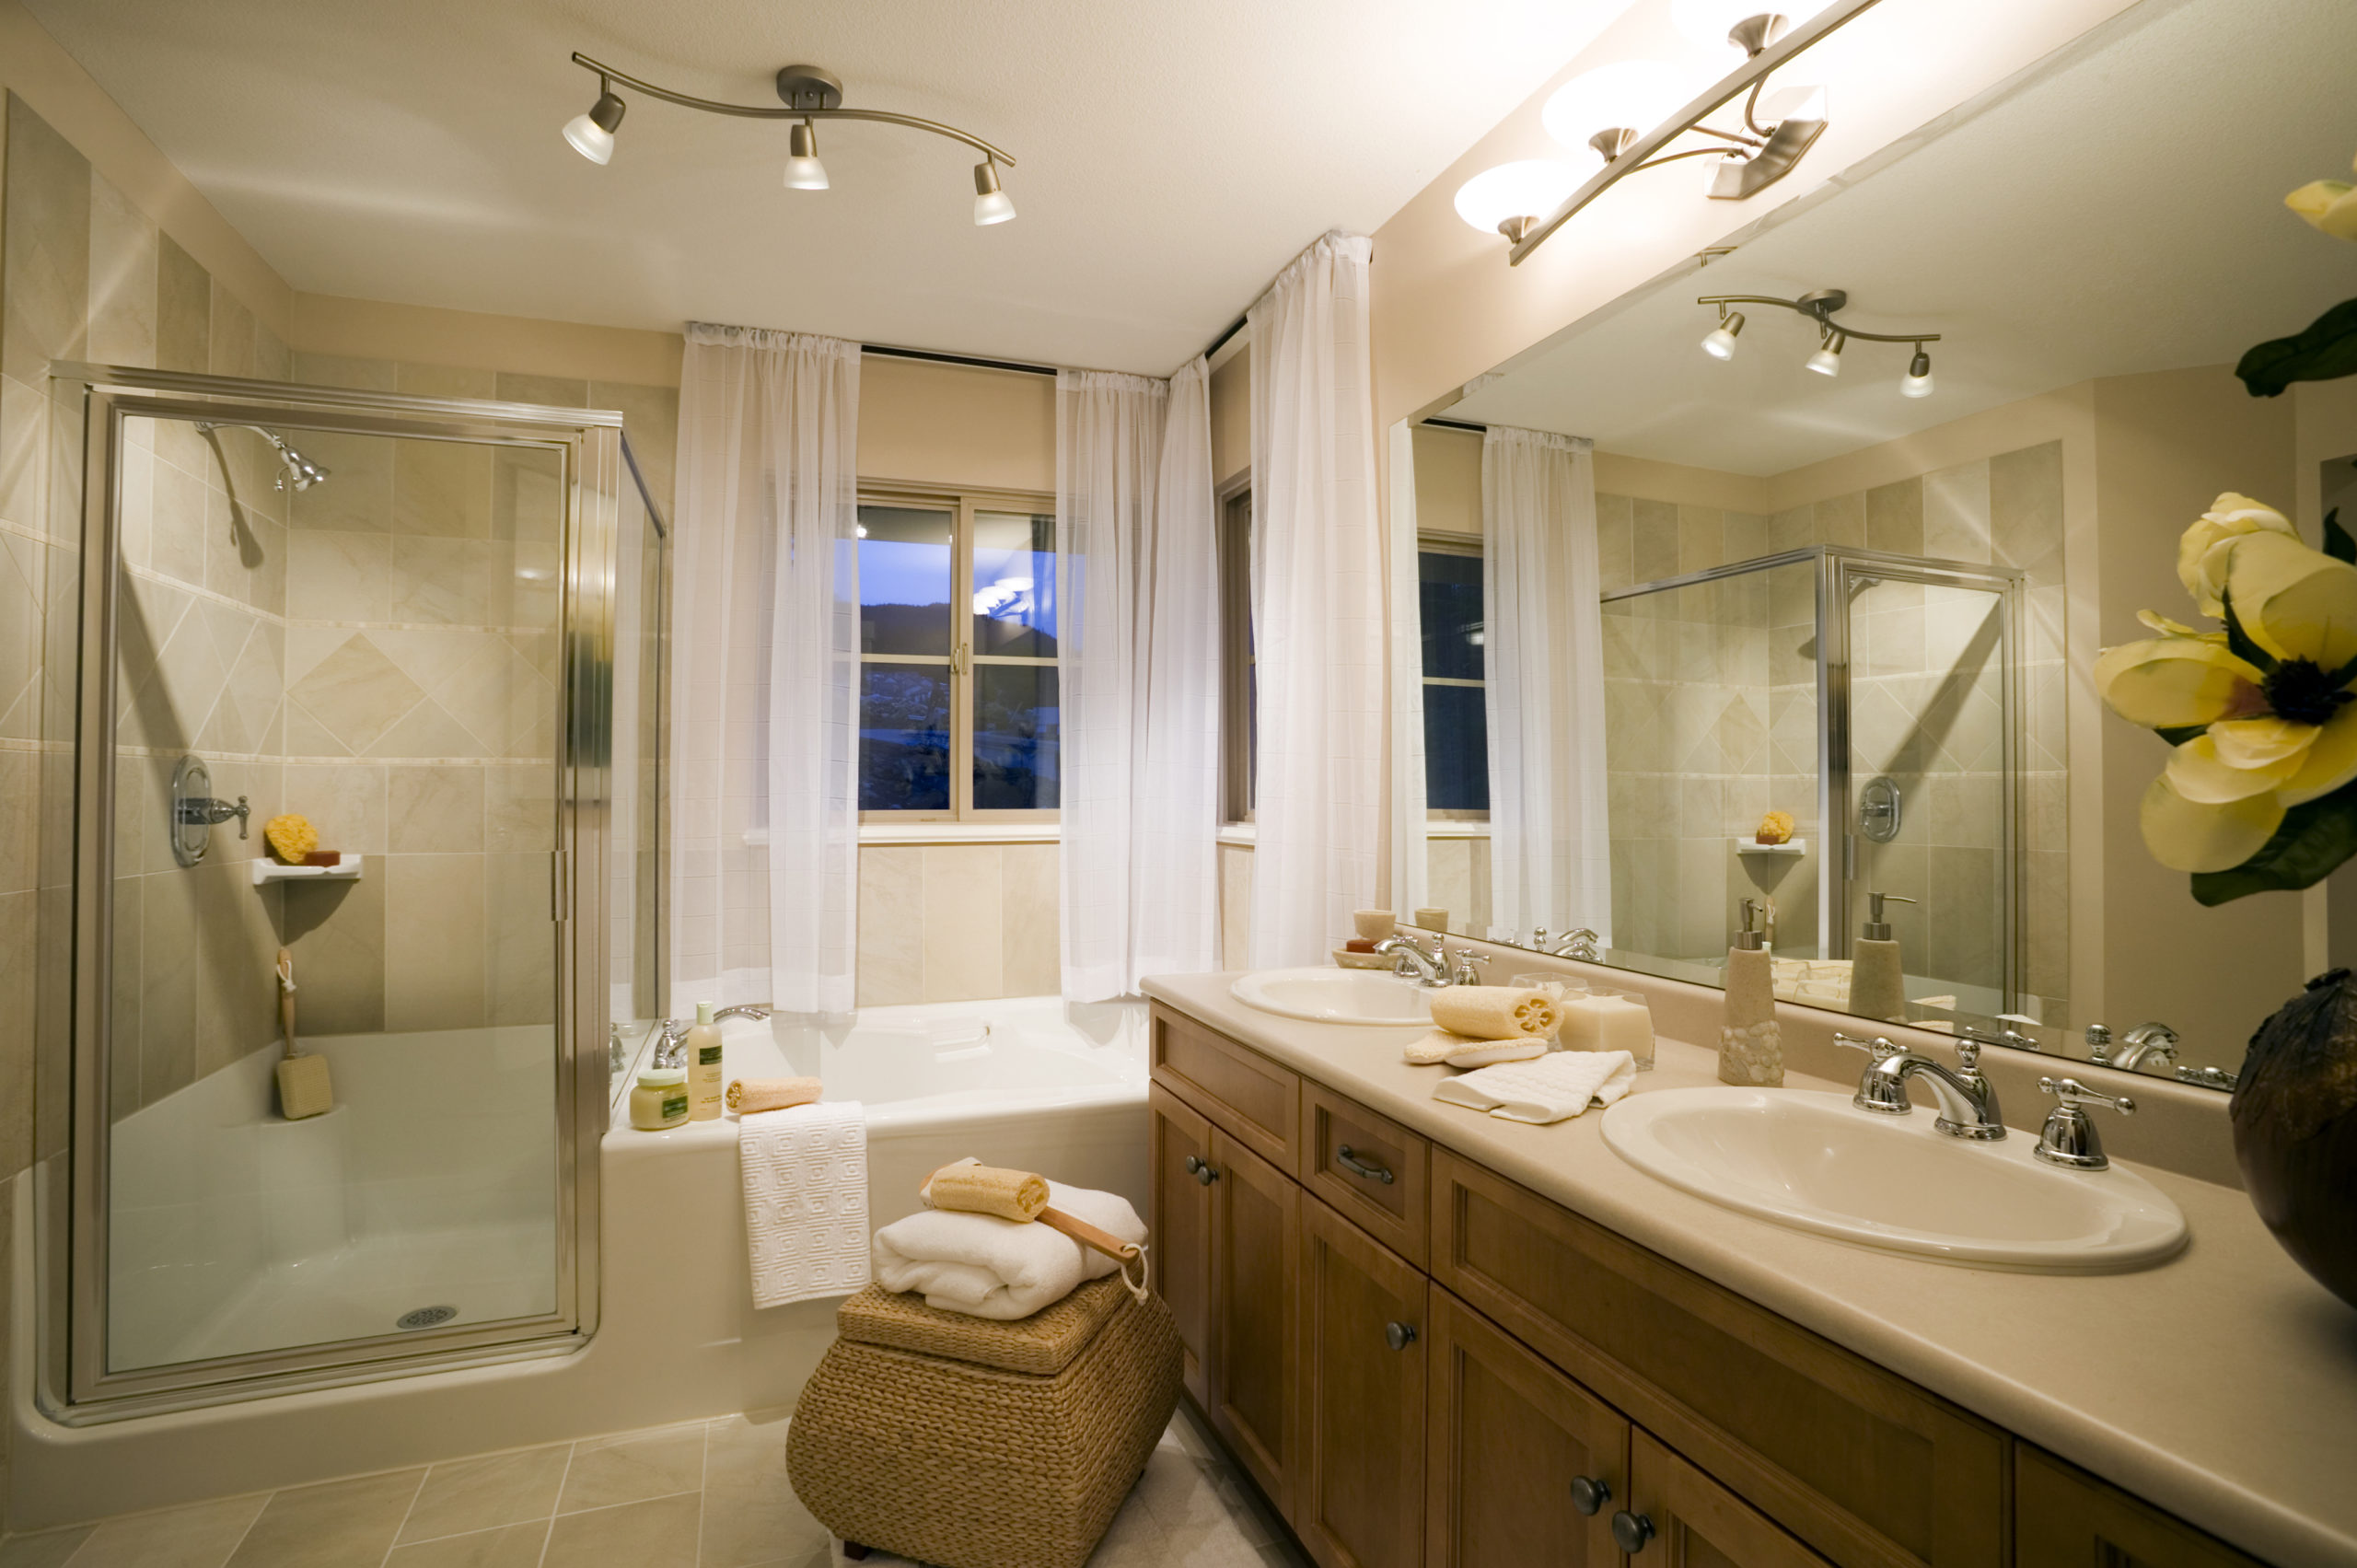 3 ideas to make your bathroom feel like a spa Image